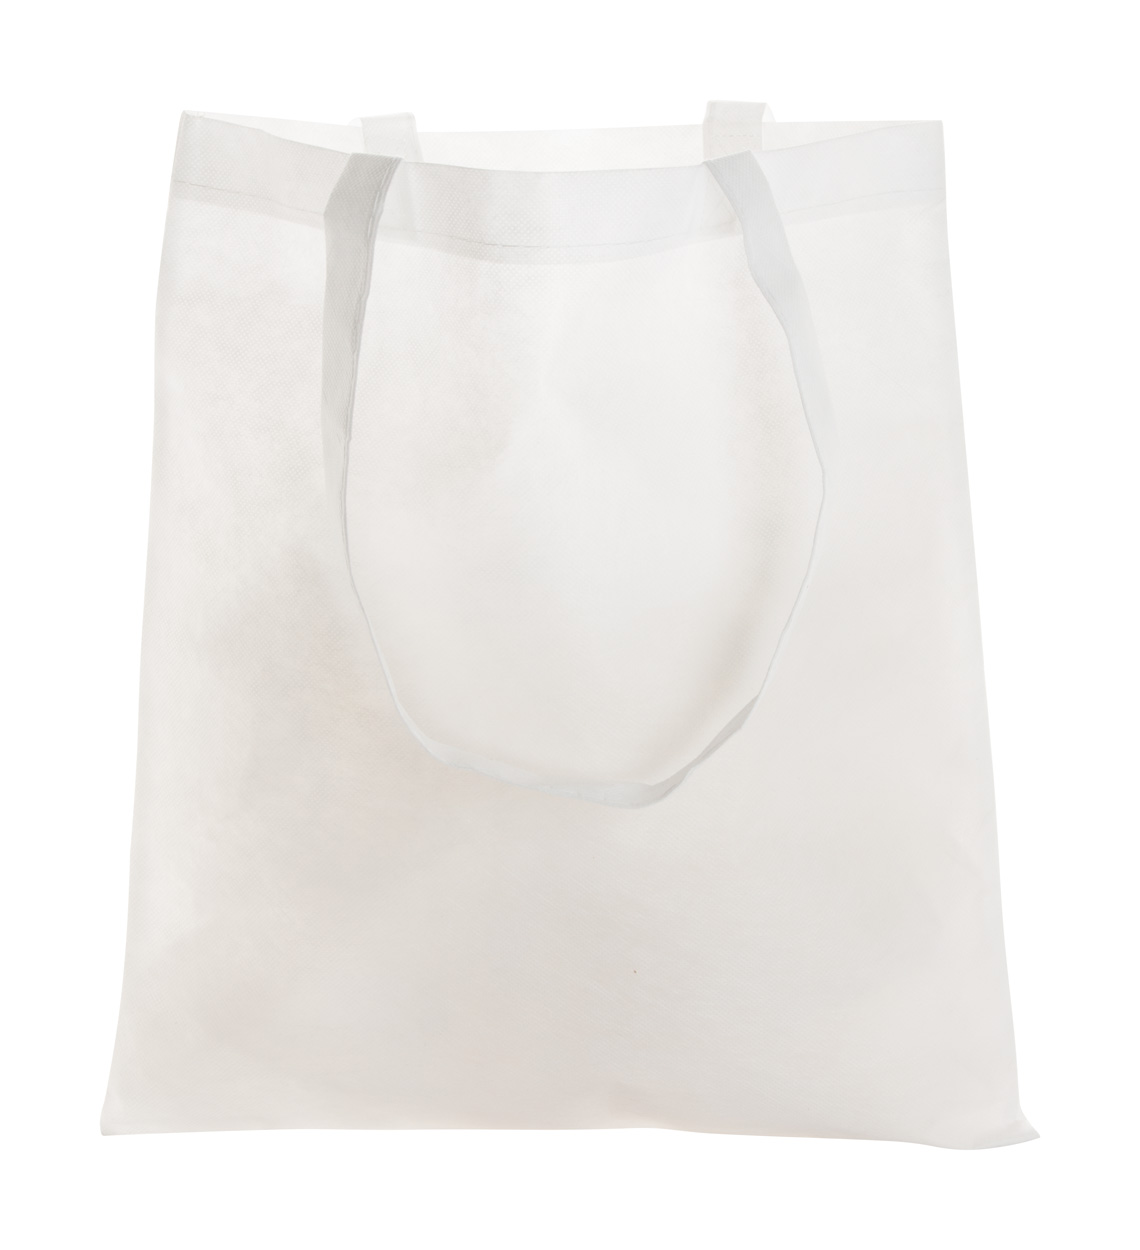 Shopping bag MIRTAL made of non-woven fabric - white